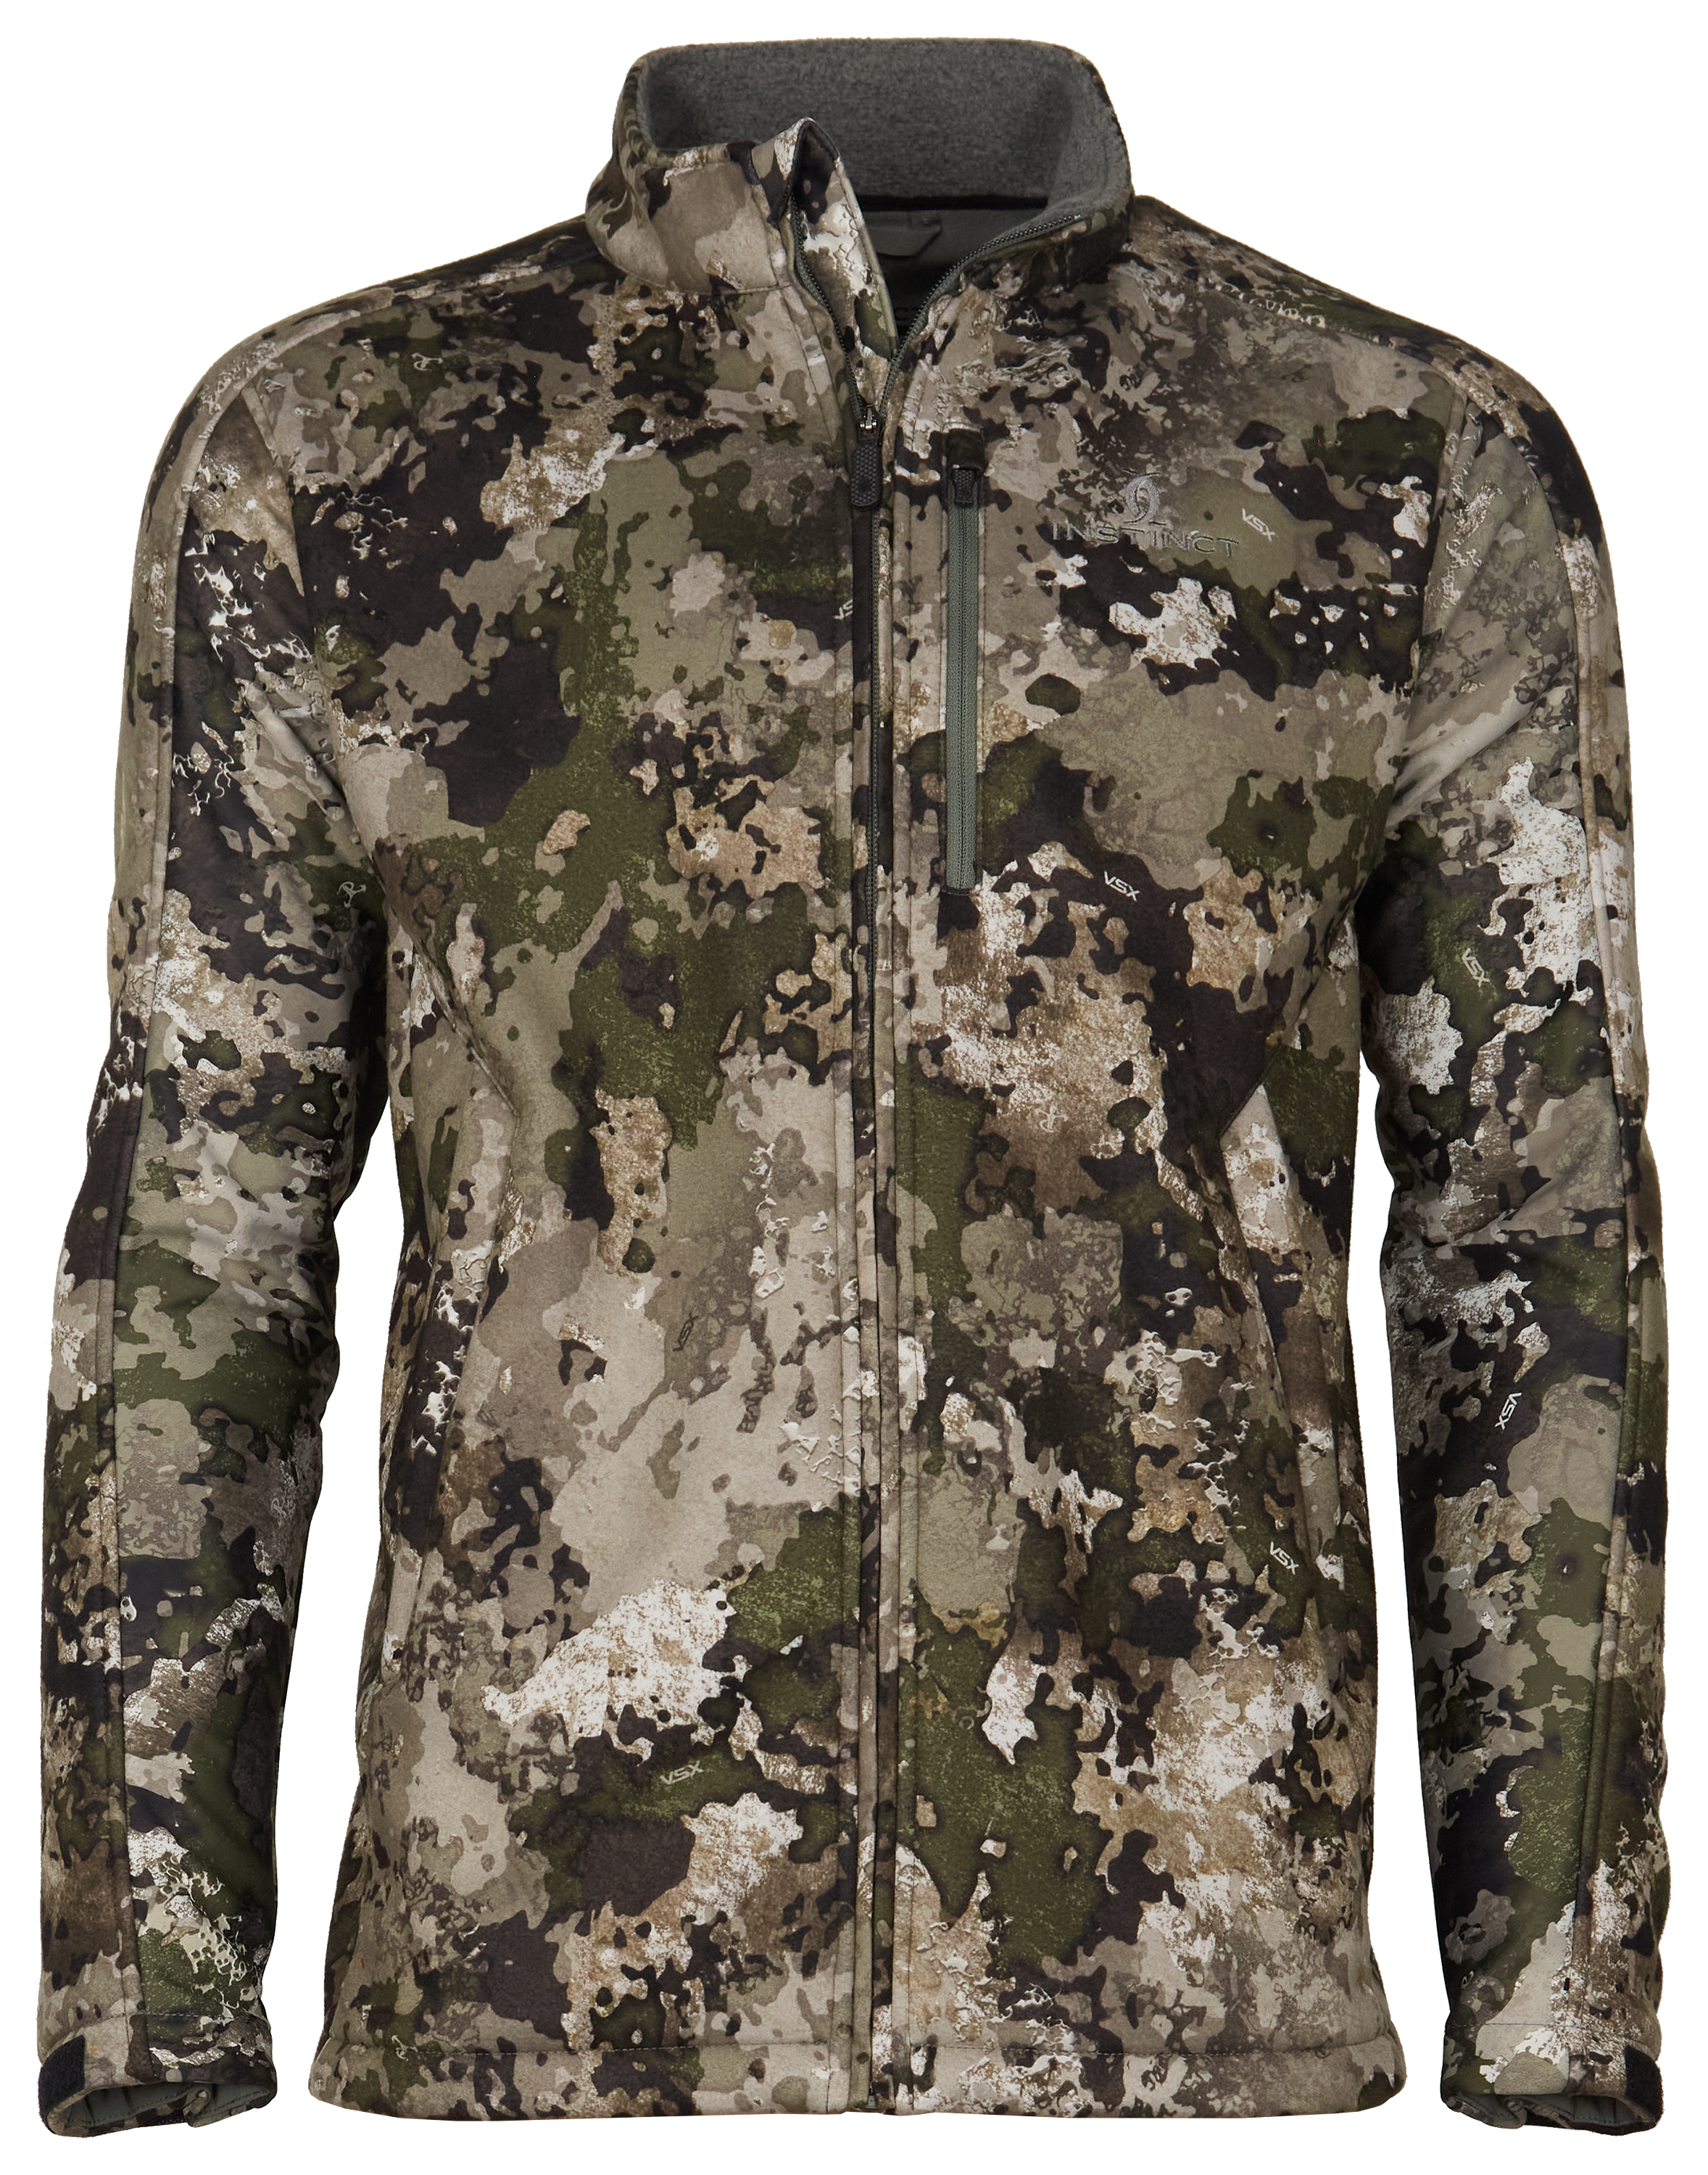  TrueTimber Men's Camouflage Hunting Jacket Medium